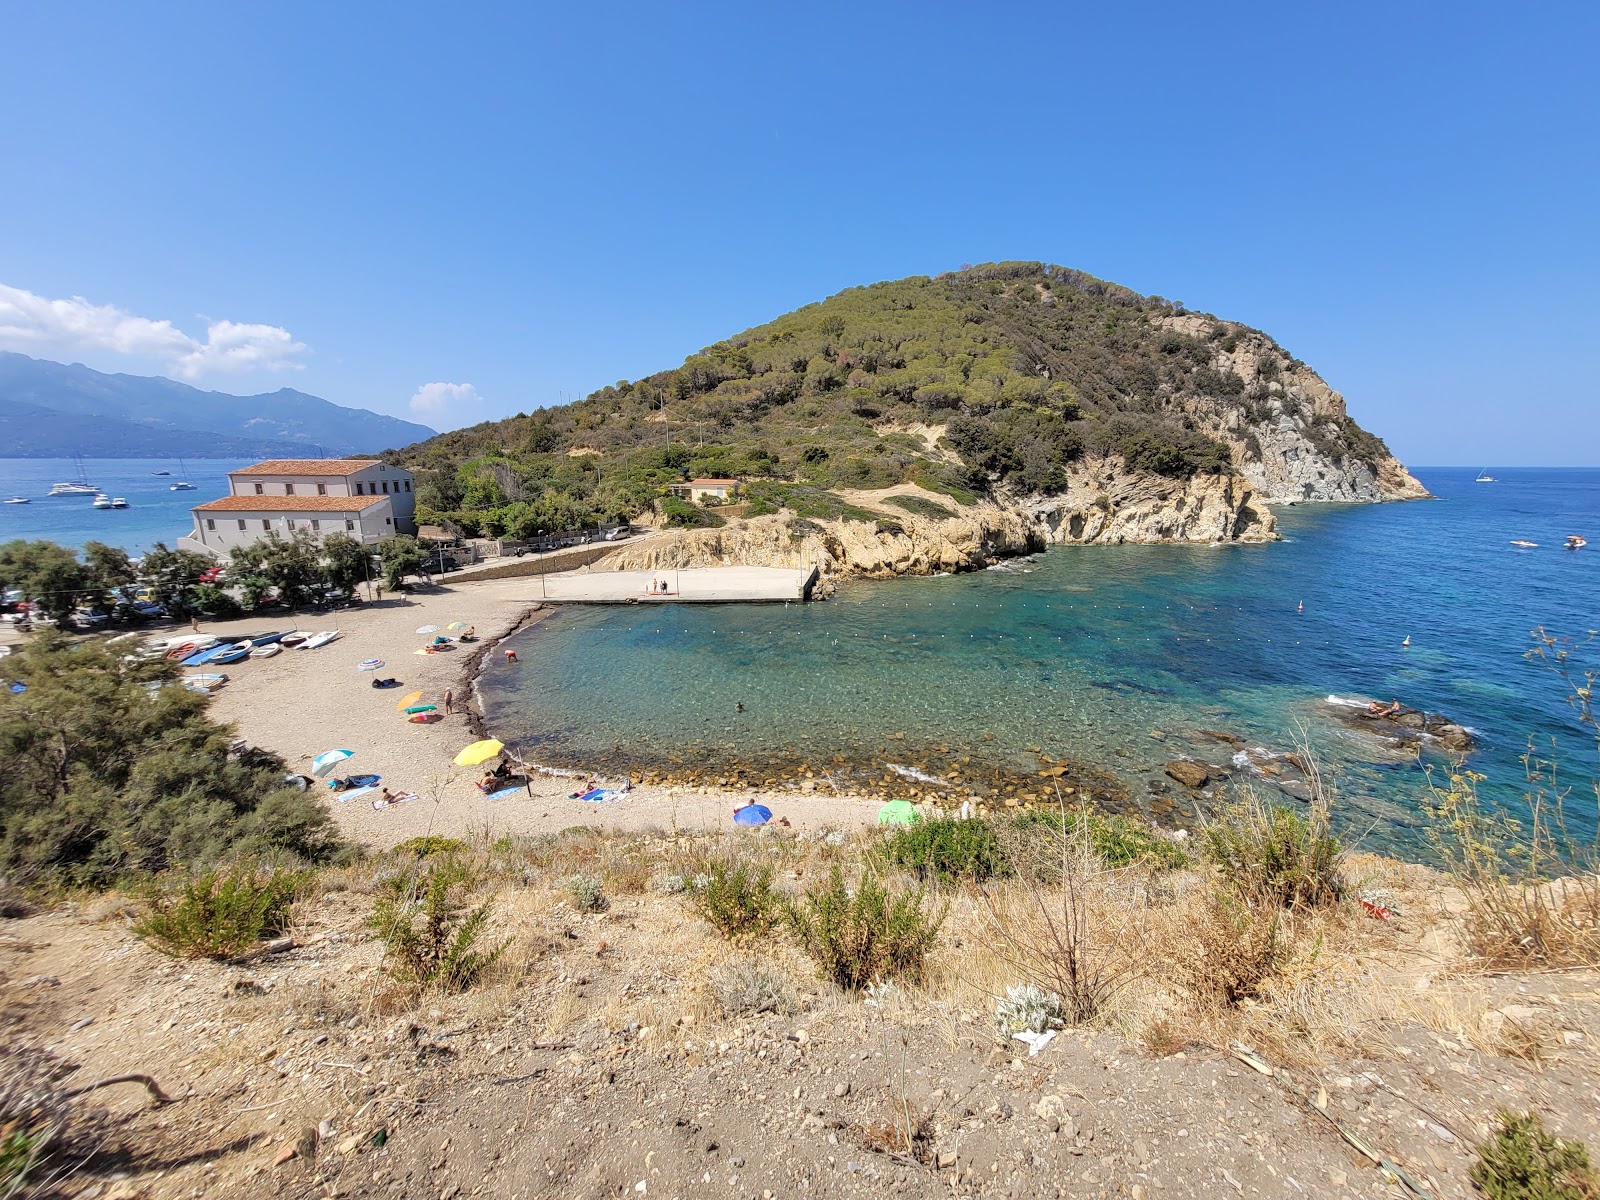 Spiaggia di Enfola'in fotoğrafı uçurumlarla desteklenmiş